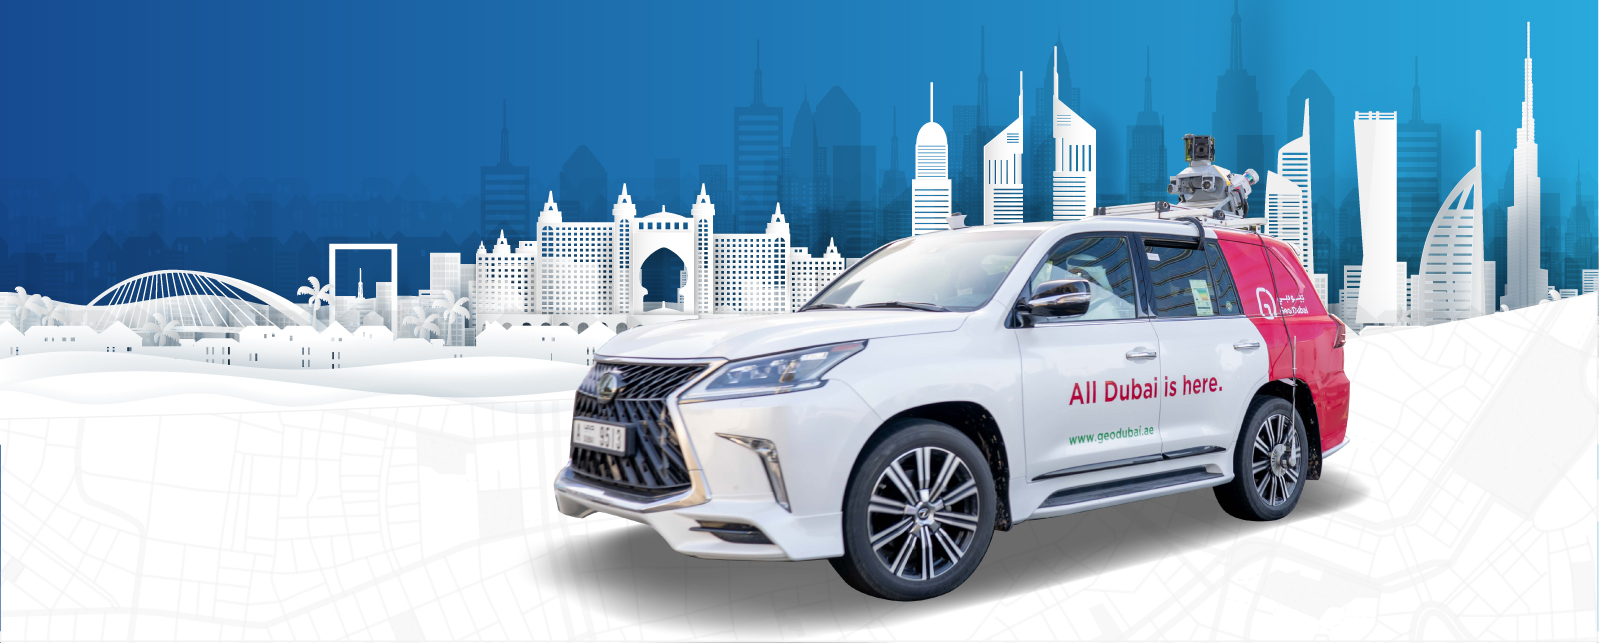 Dubai Municipality launches digital map project for autonomous vehicles